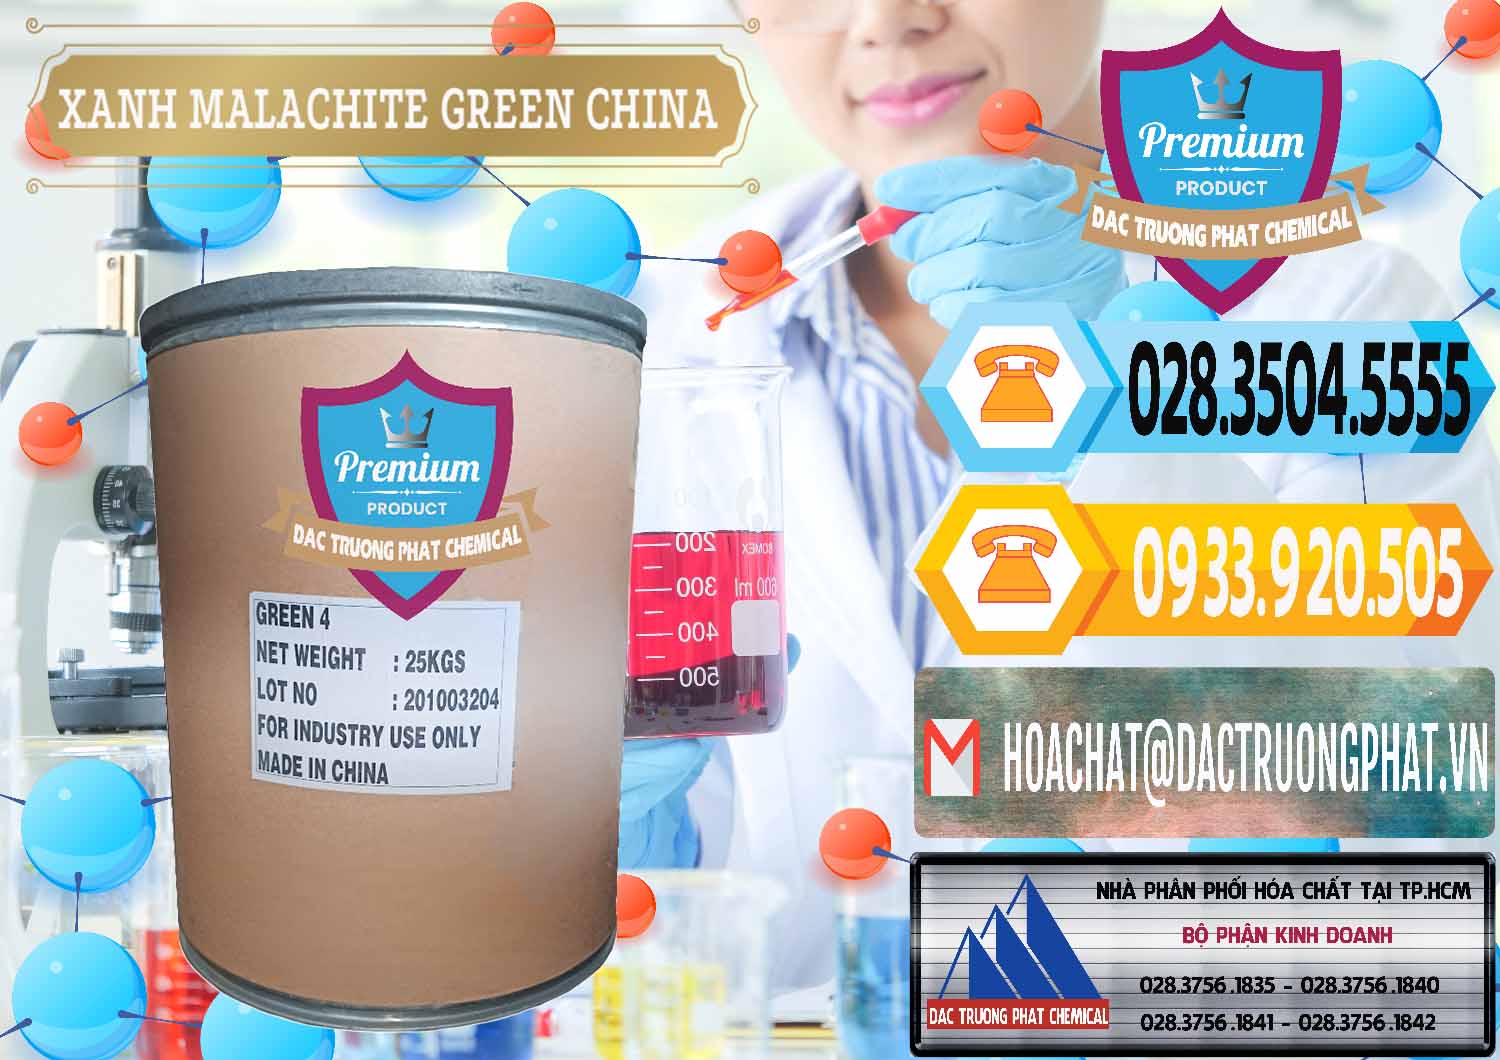 Đơn vị chuyên nhập khẩu và bán Xanh Malachite Green Trung Quốc China - 0325 - Nhà nhập khẩu ( cung cấp ) hóa chất tại TP.HCM - hoachattayrua.net